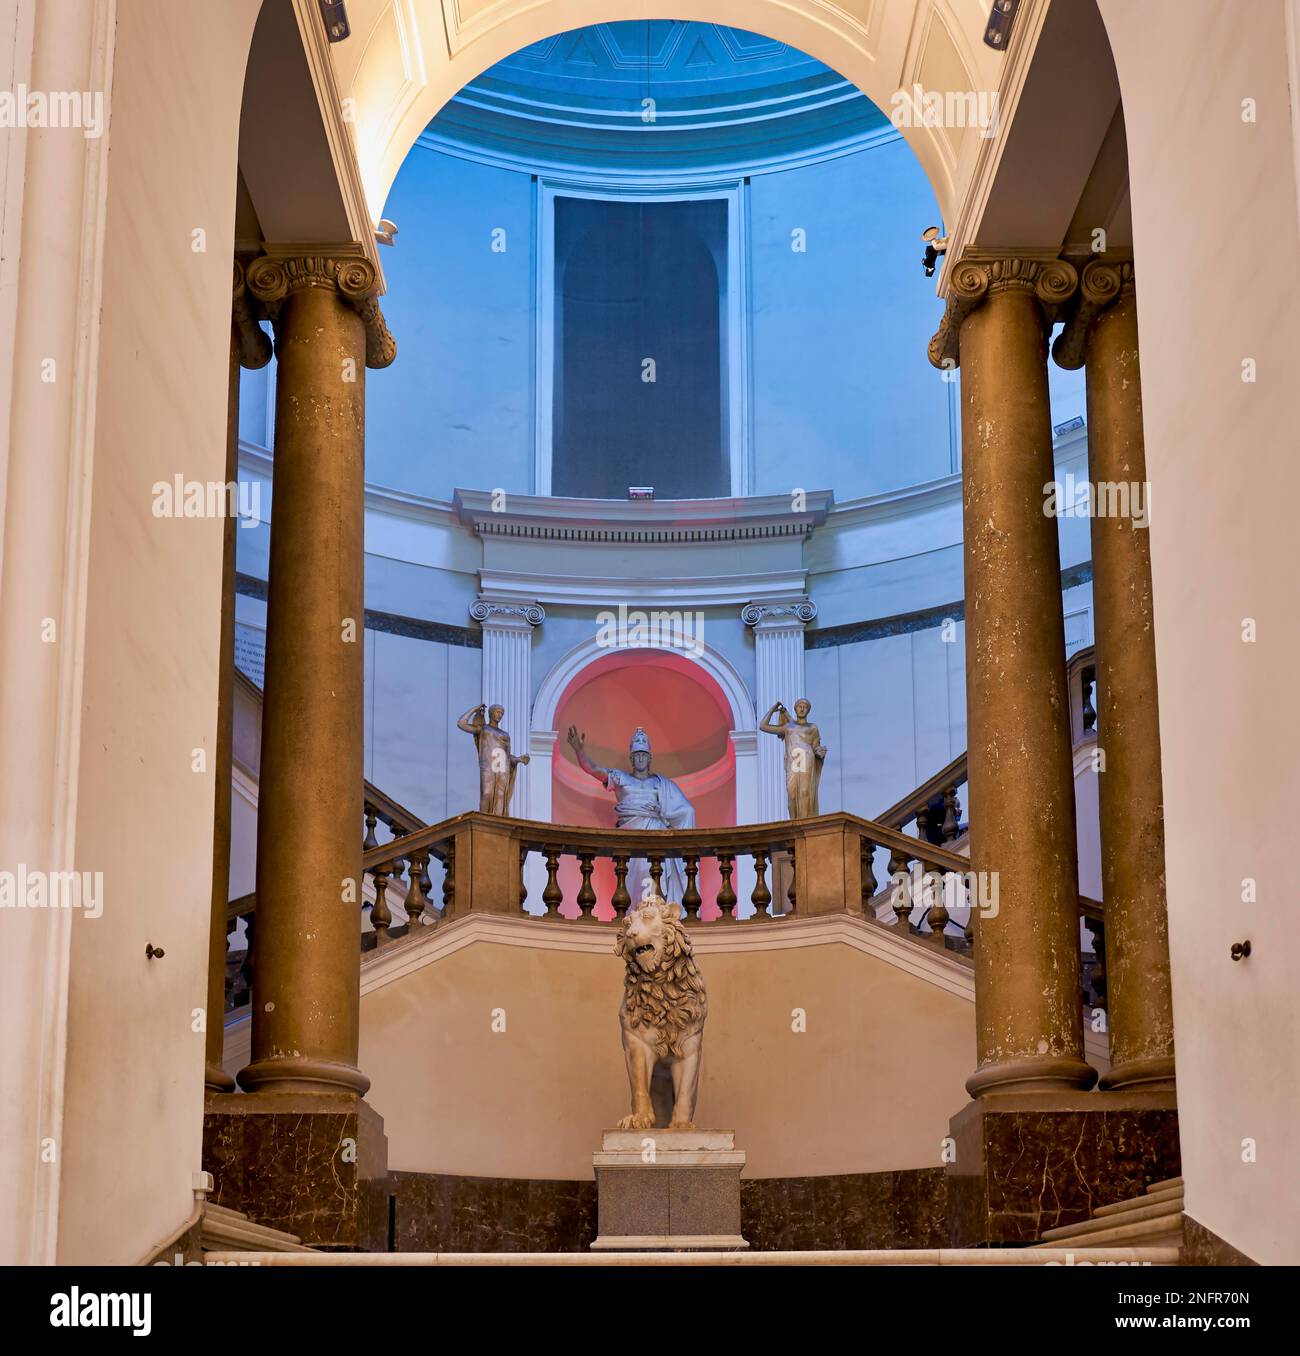 Neapel Kampanien Italien. Das Archäologische Nationalmuseum von Neapel (Museo Archeologico Nazionale di Napoli) ist ein wichtiges italienisches Archäologisches Museum Stockfoto